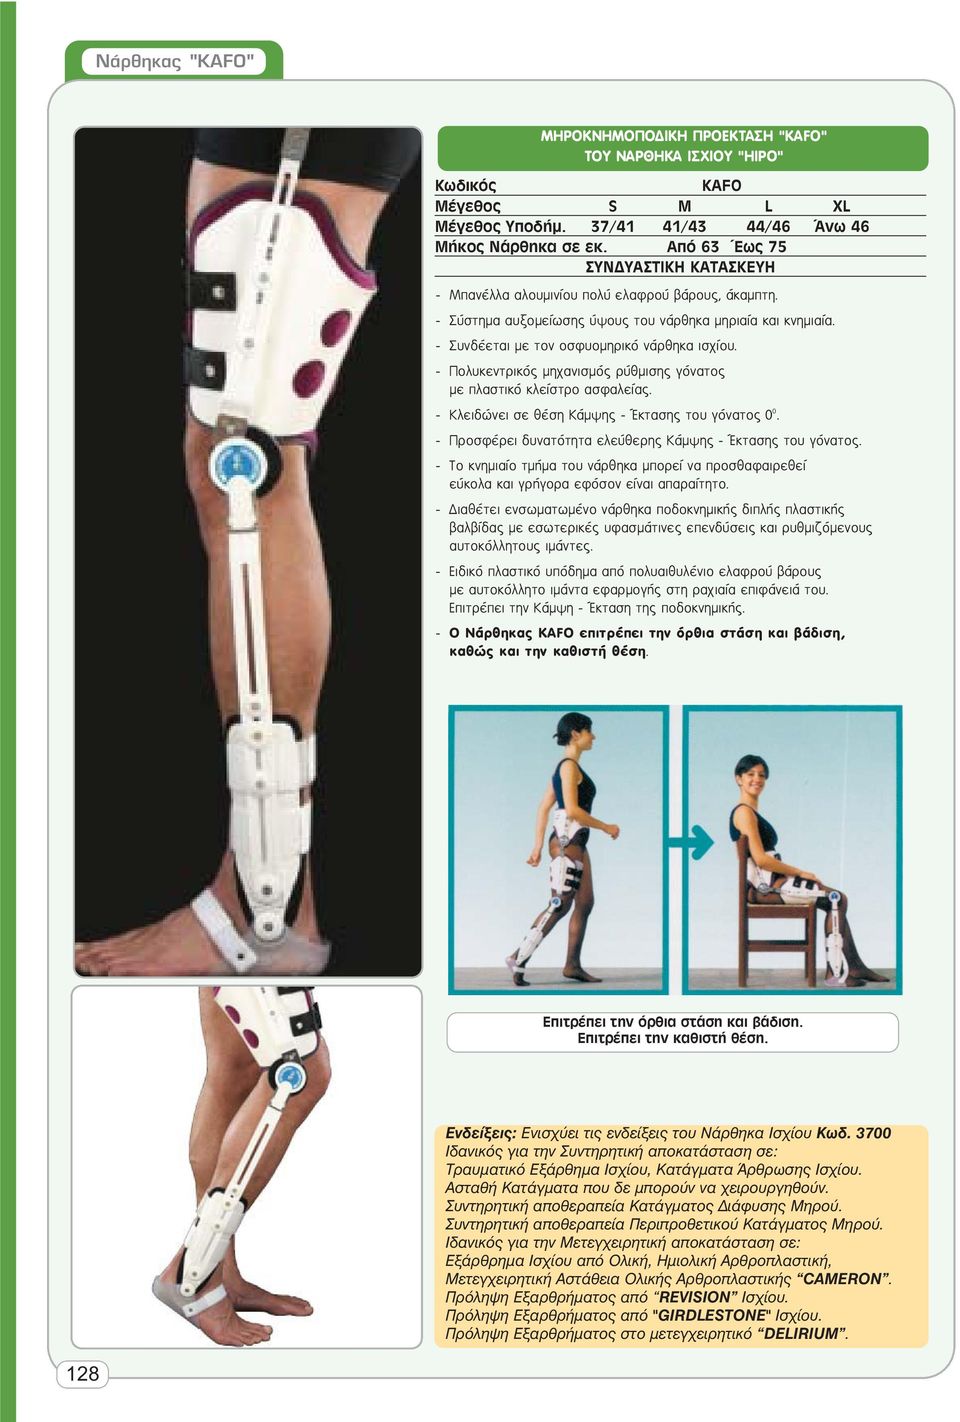 - Πολυκεντρικός μηχανισμός ρύθμισης γόνατος με πλαστικό κλείστρο ασφαλείας. - Κλειδώνει σε θέση Κάμψης - Έκτασης του γόνατος 0 0. - Προσφέρει δυνατότητα ελεύθερης Κάμψης - Έκτασης του γόνατος.